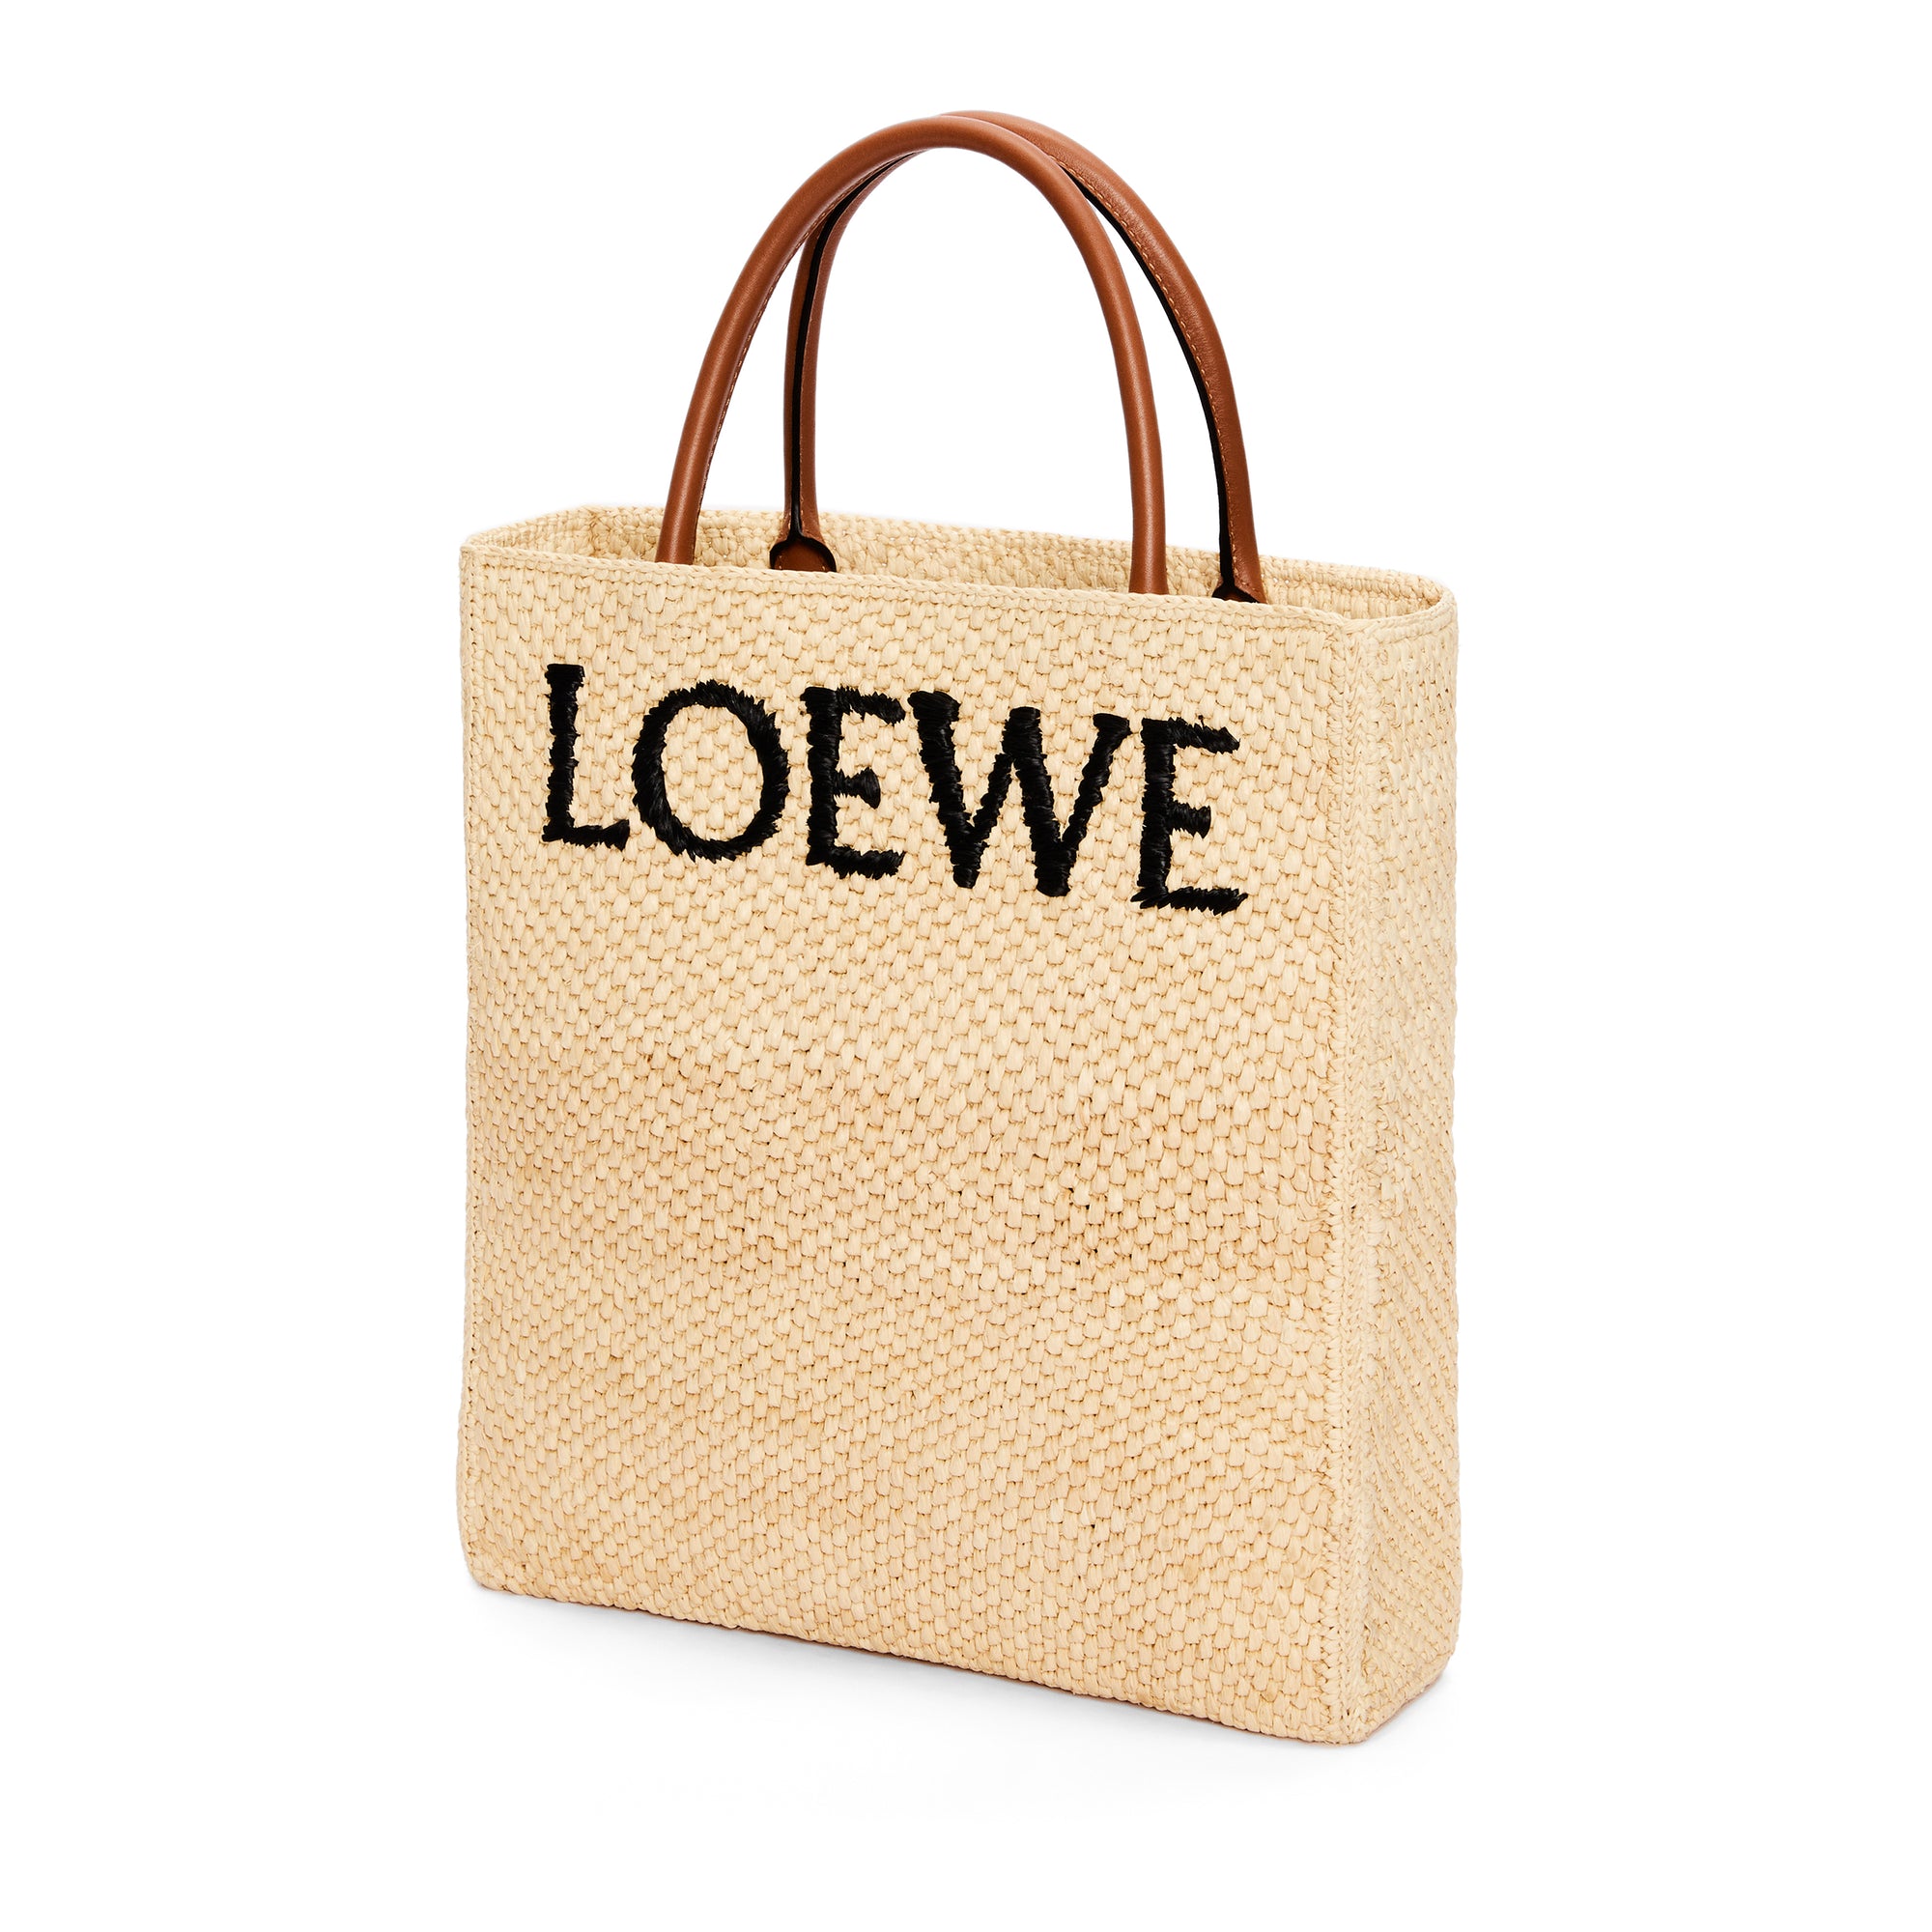 Loewe - Women’s Small Raphia Tote Bag - (Natural/Black) view 3